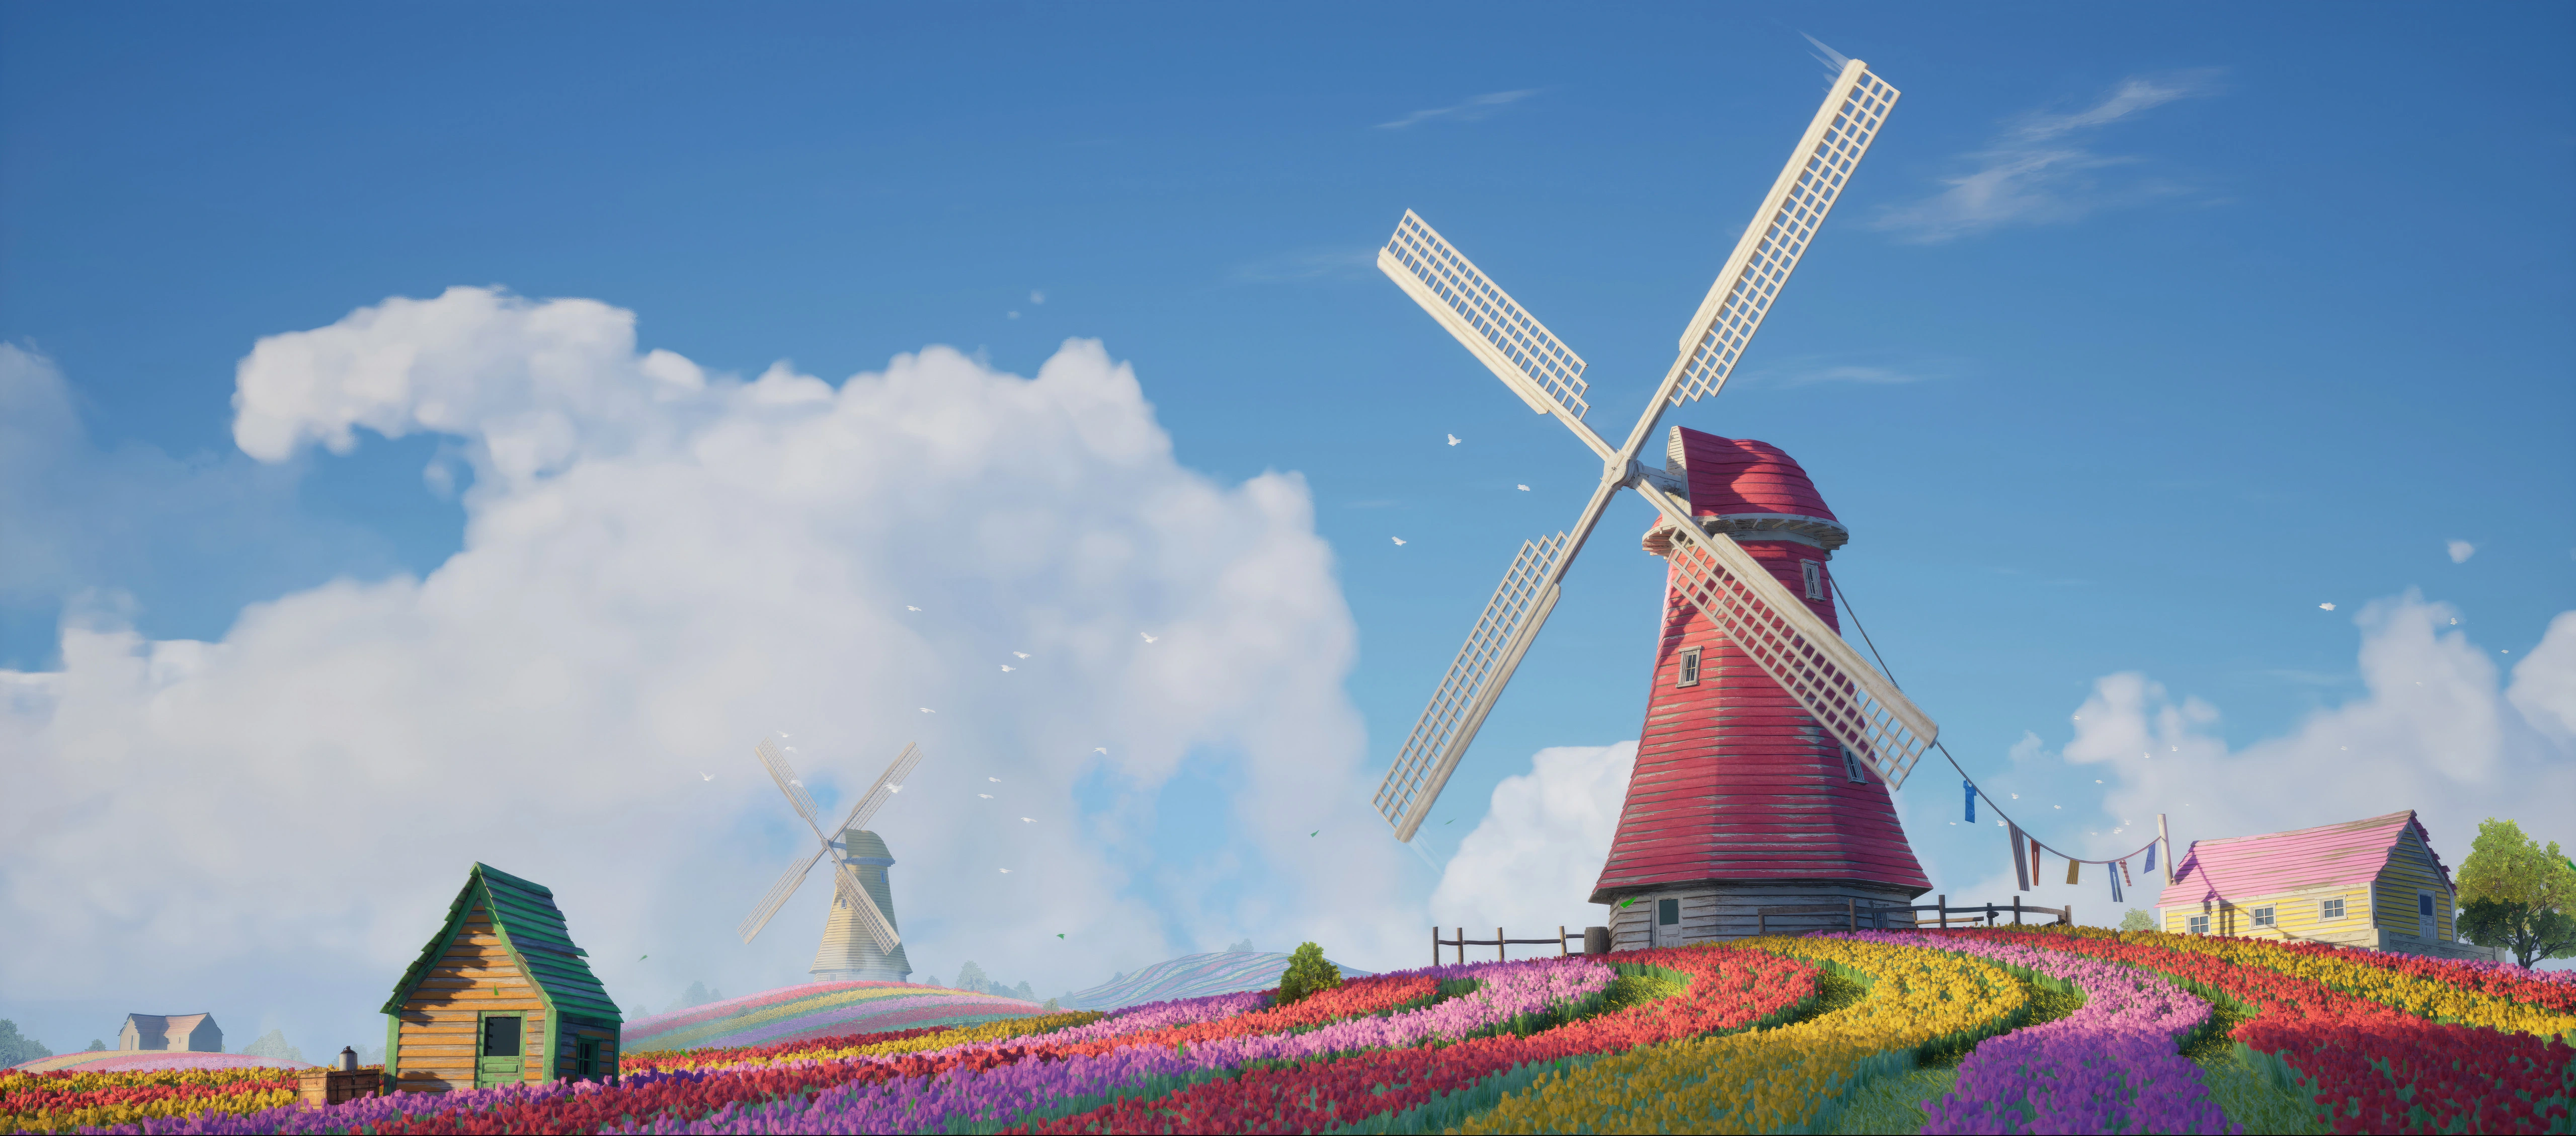 windmill tulips field 5k qx.jpg